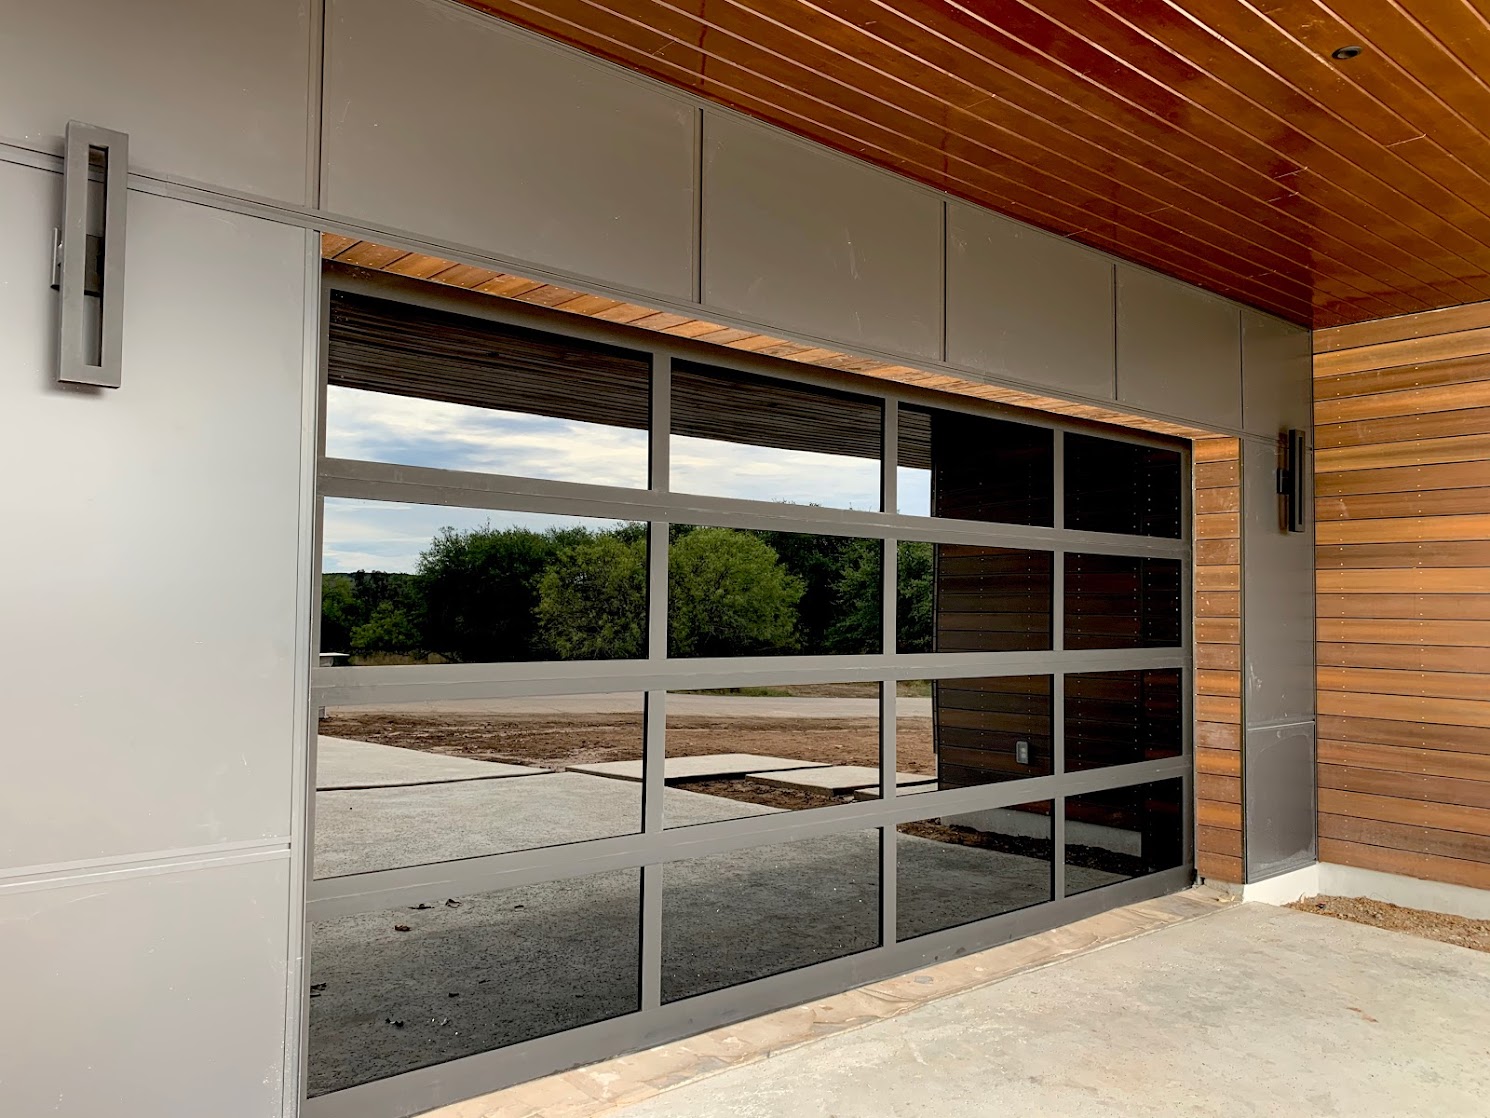 Fratex aluminum garage door replacement in Round Rock